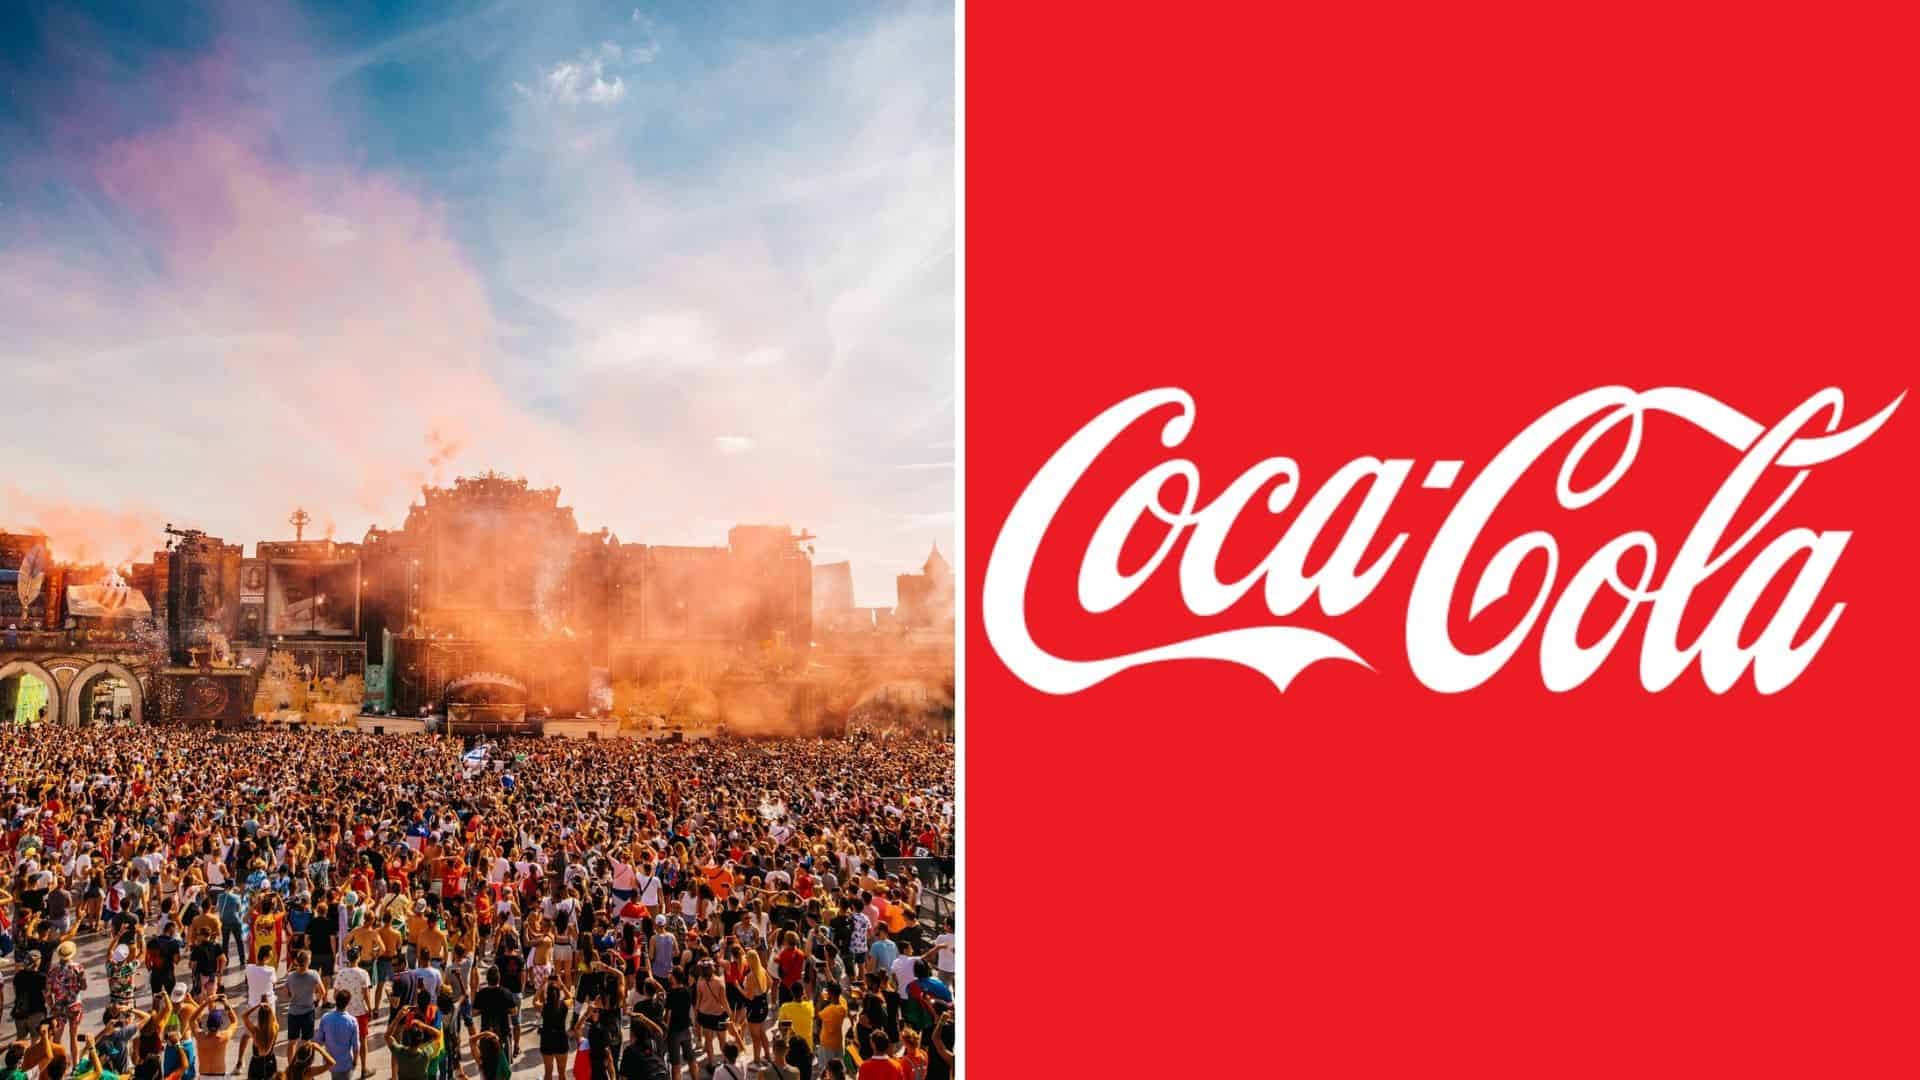 Tomorrowland, Coca Cola